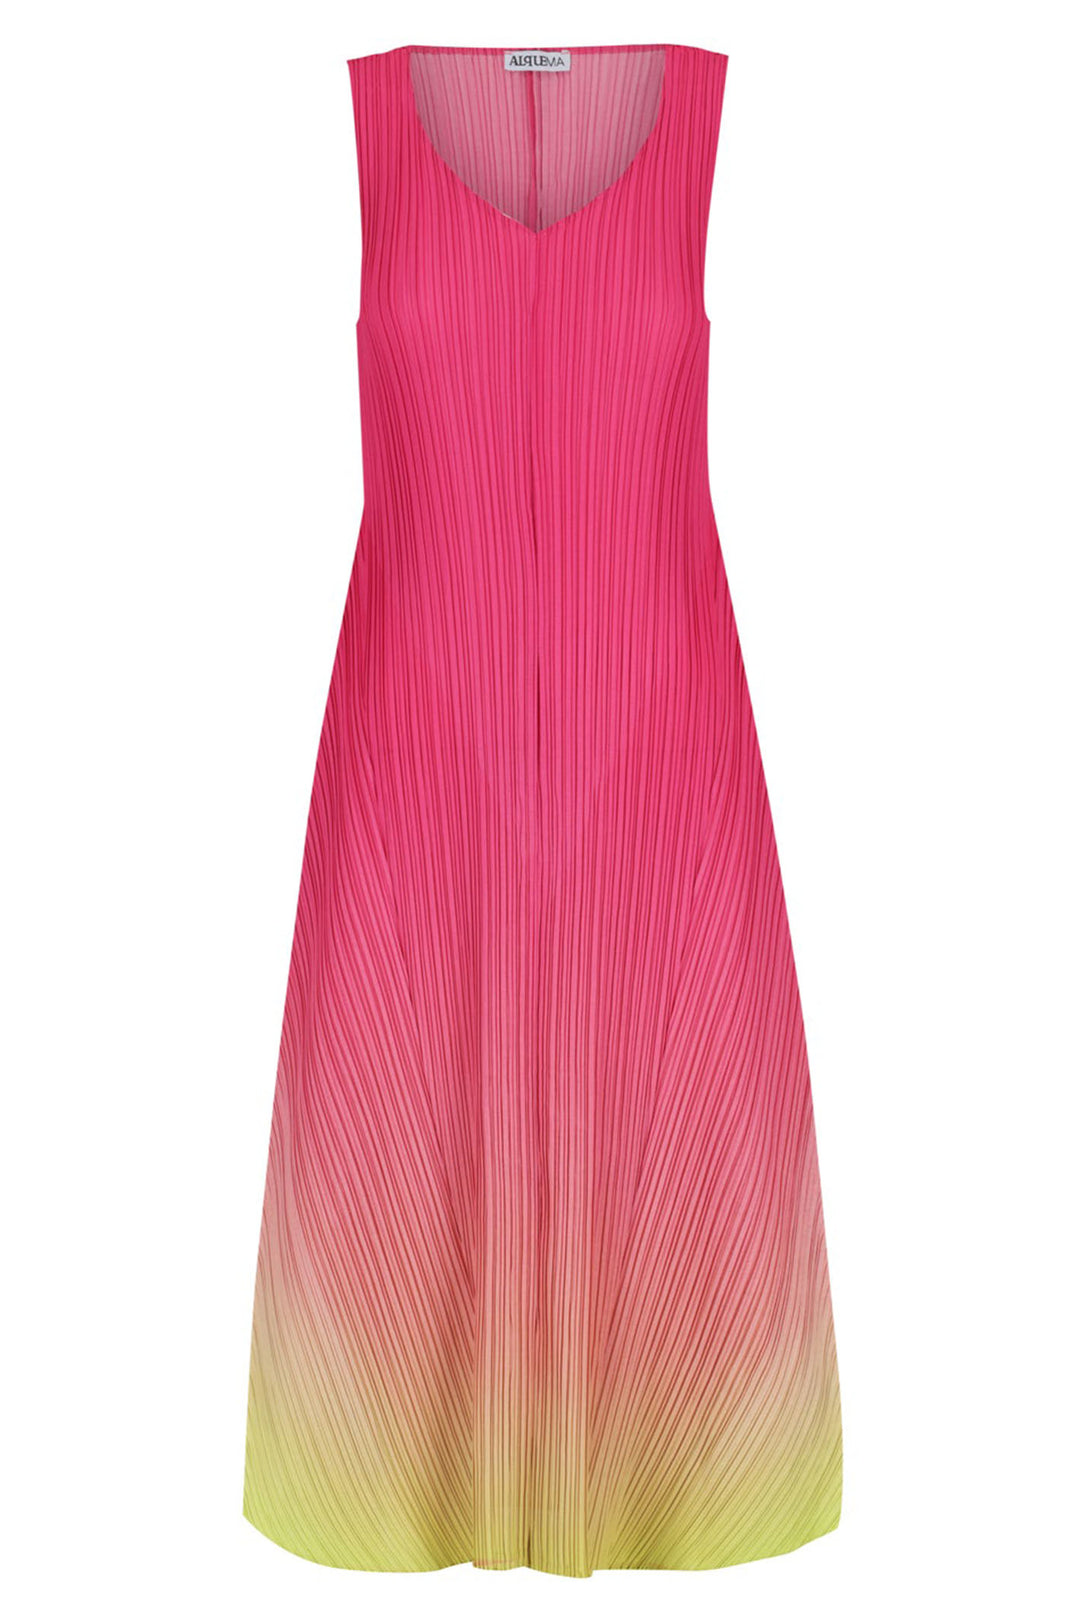 Alquema AD1072L Estrella Pink Acid Dream Dress - Experience Boutique